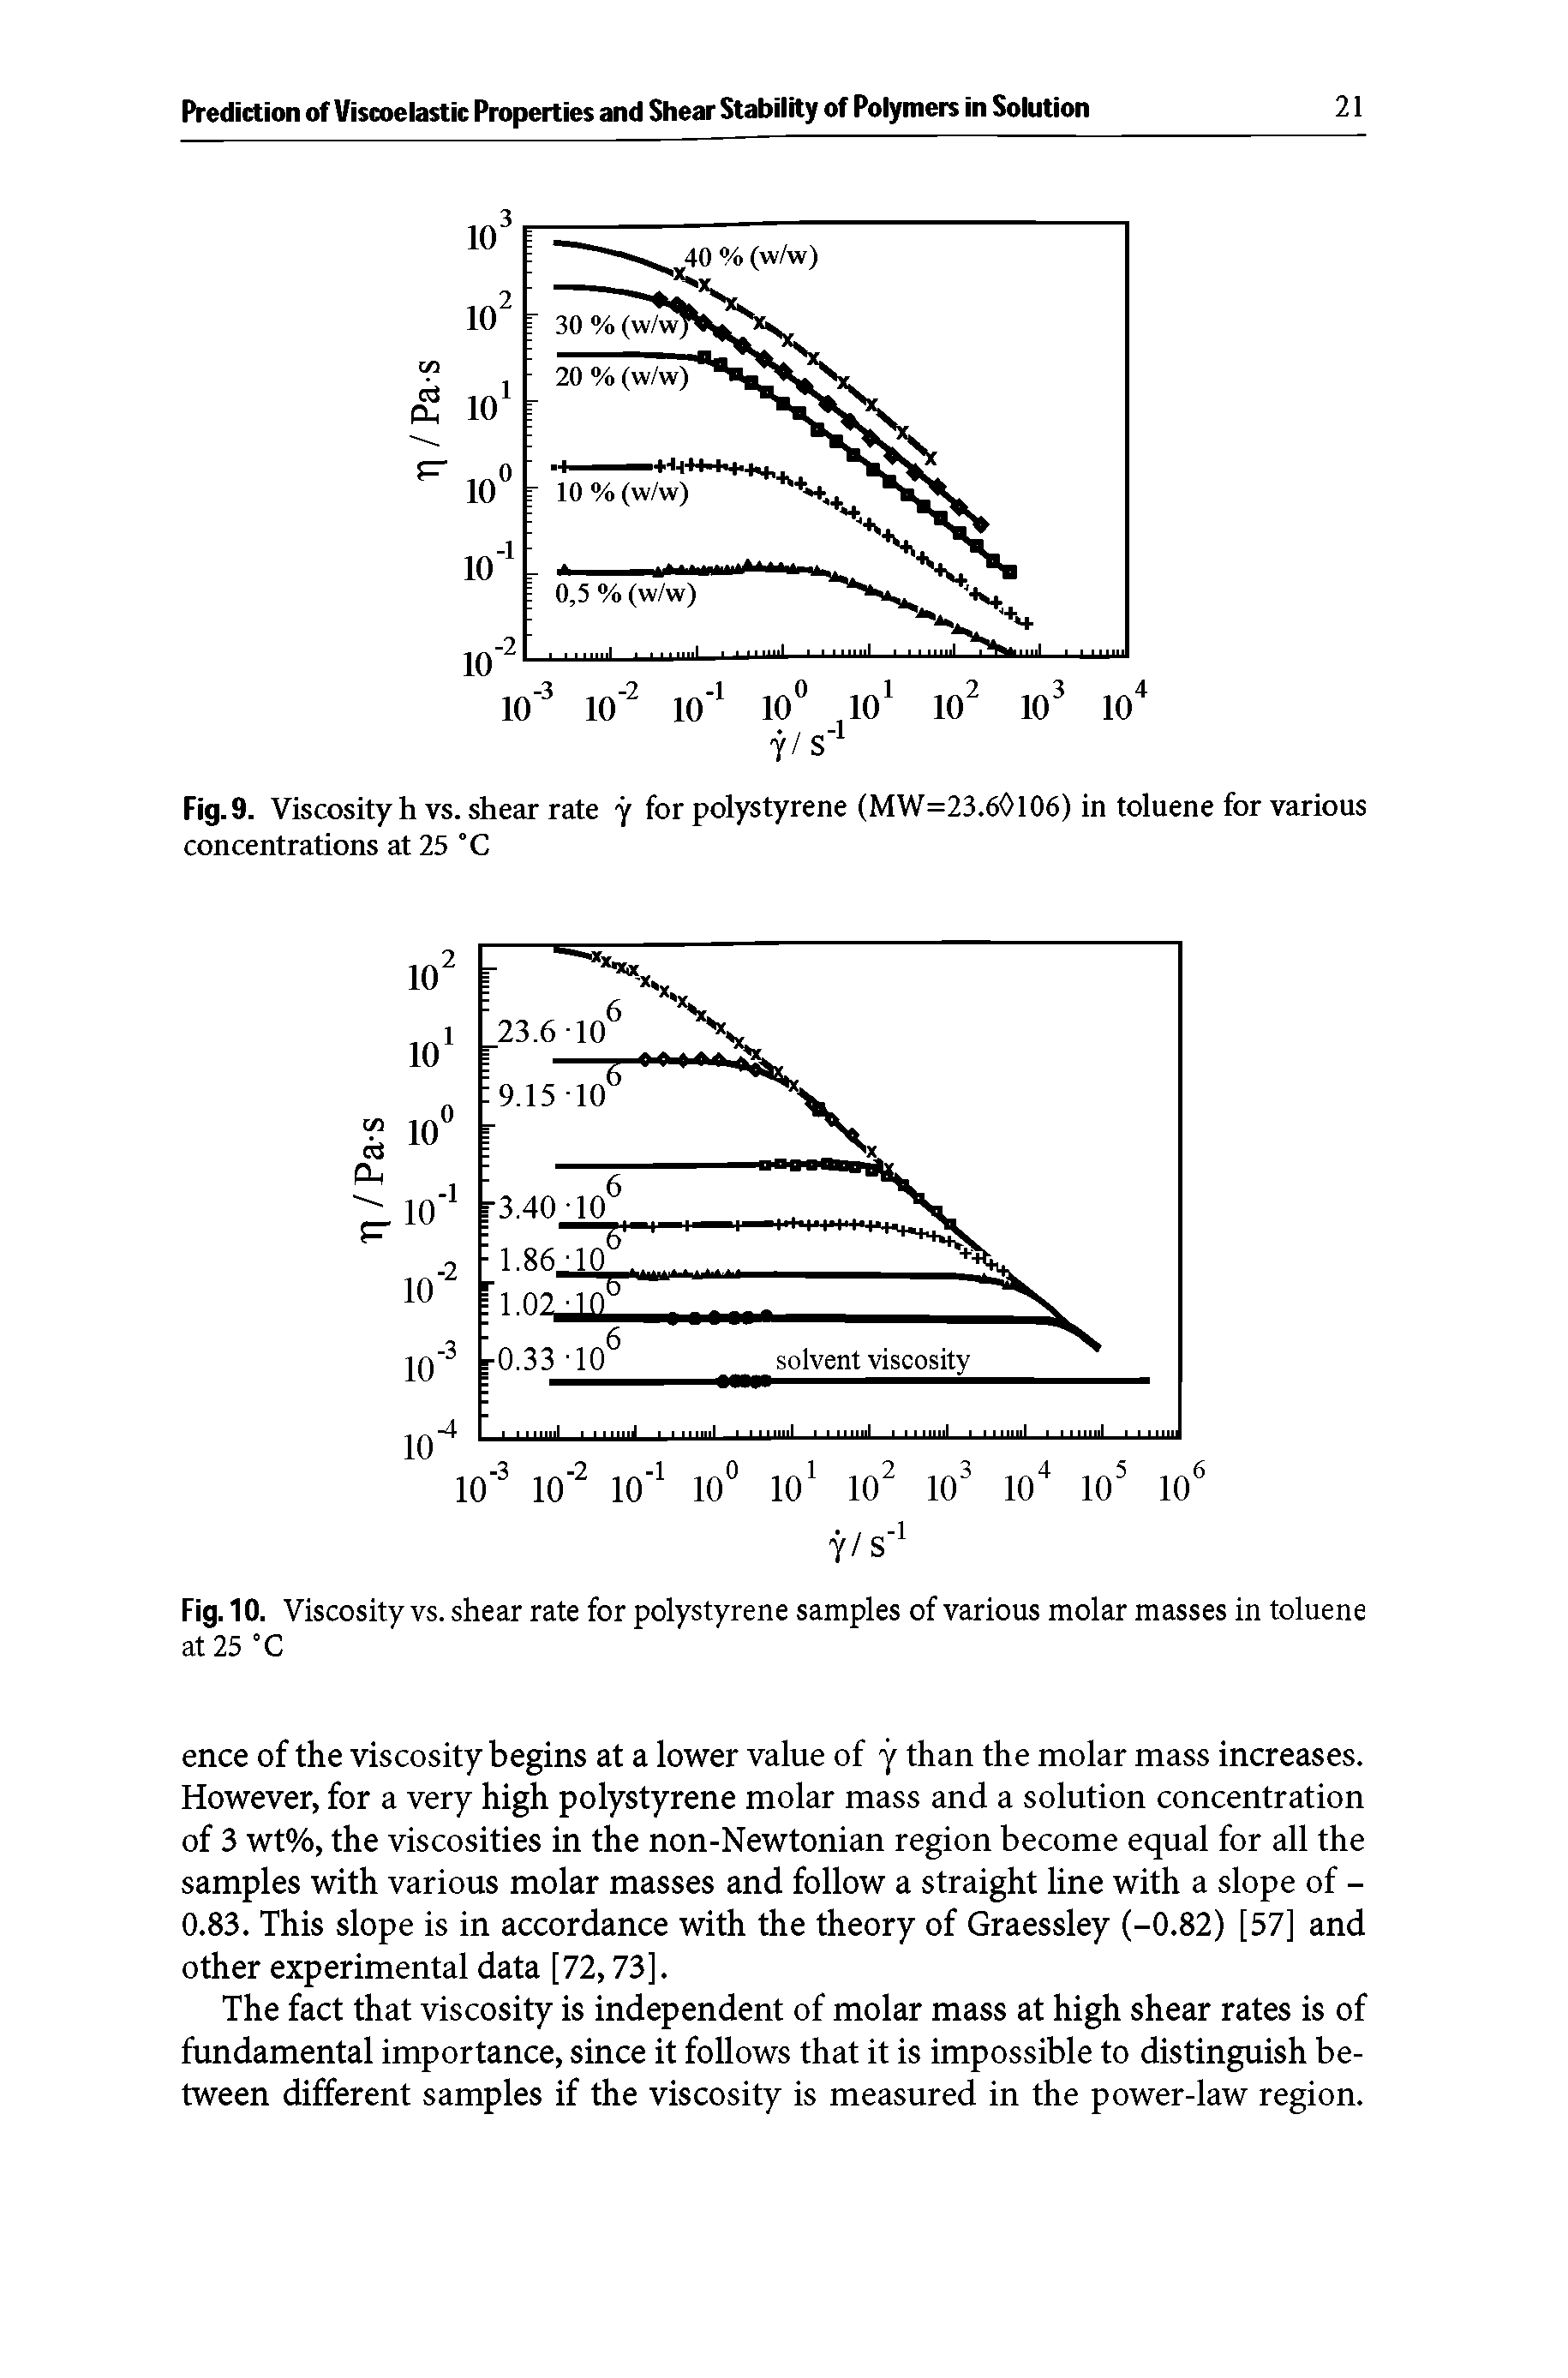 Fig. 10. Viscosity vs. shear rate for polystyrene samples of various molar masses in toluene at 25 °C...